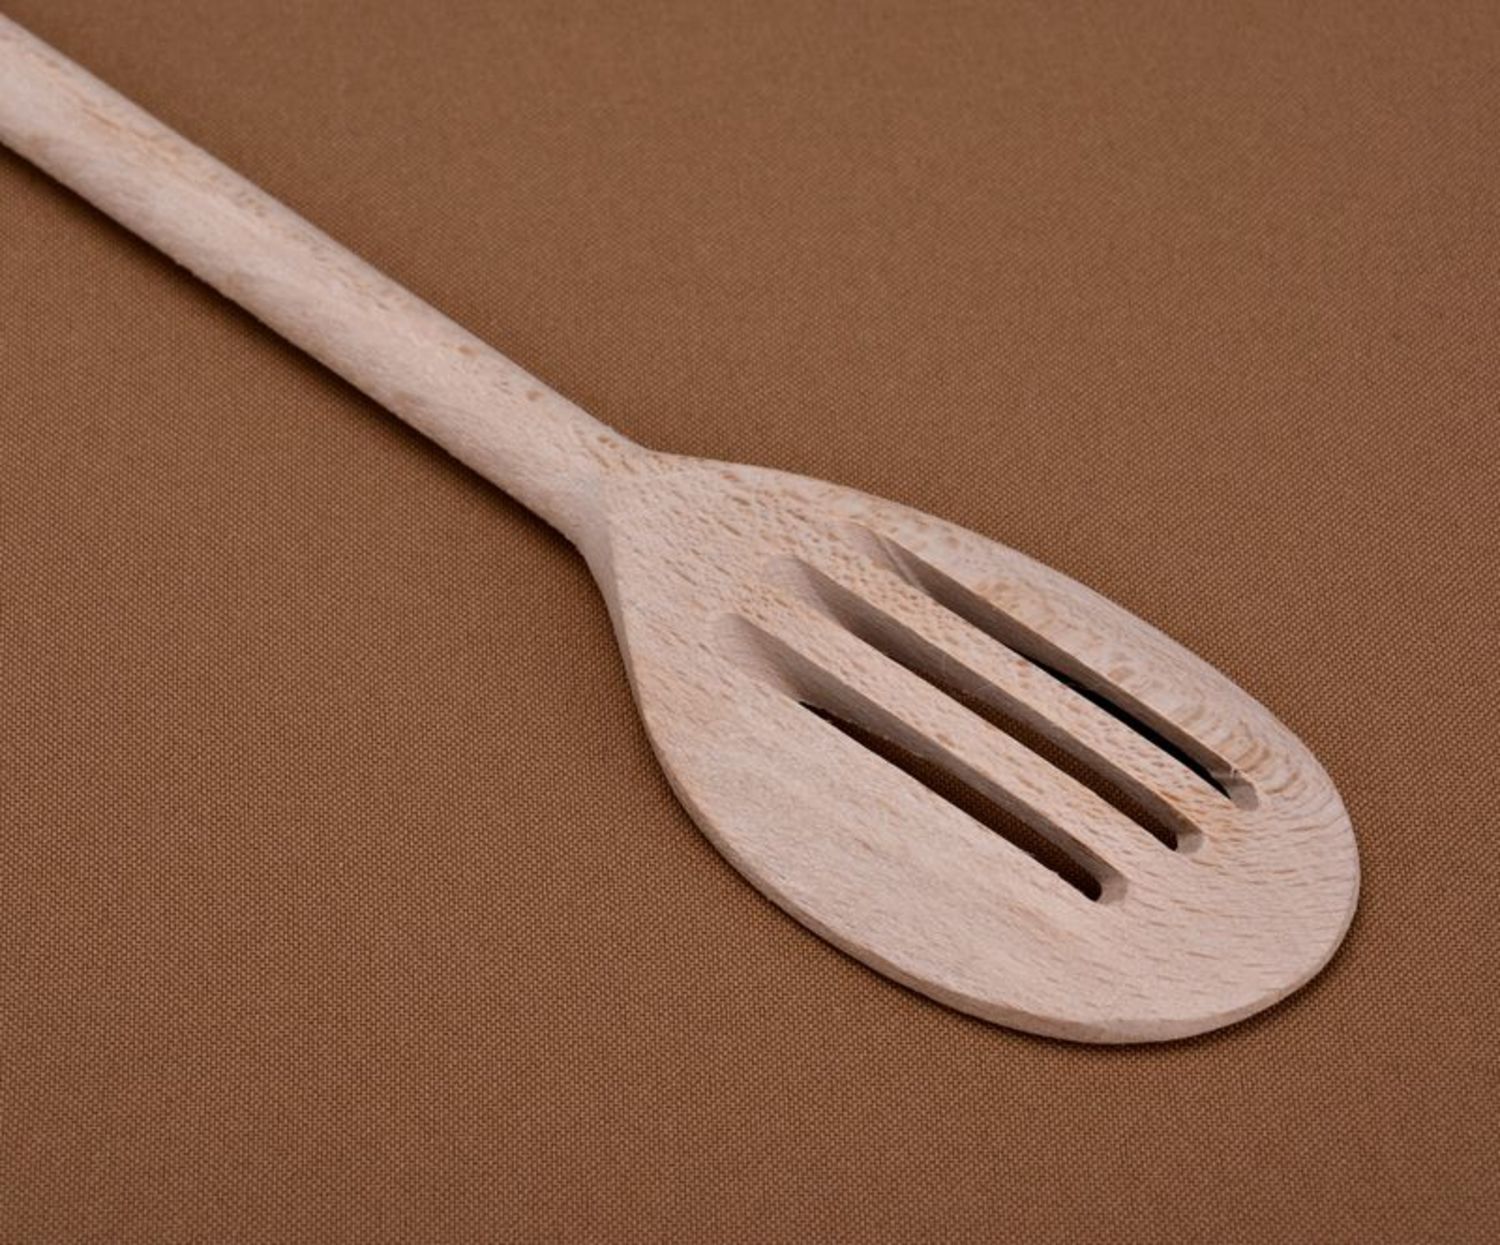 Wooden cooking spatula, Pancake spatula photo 2